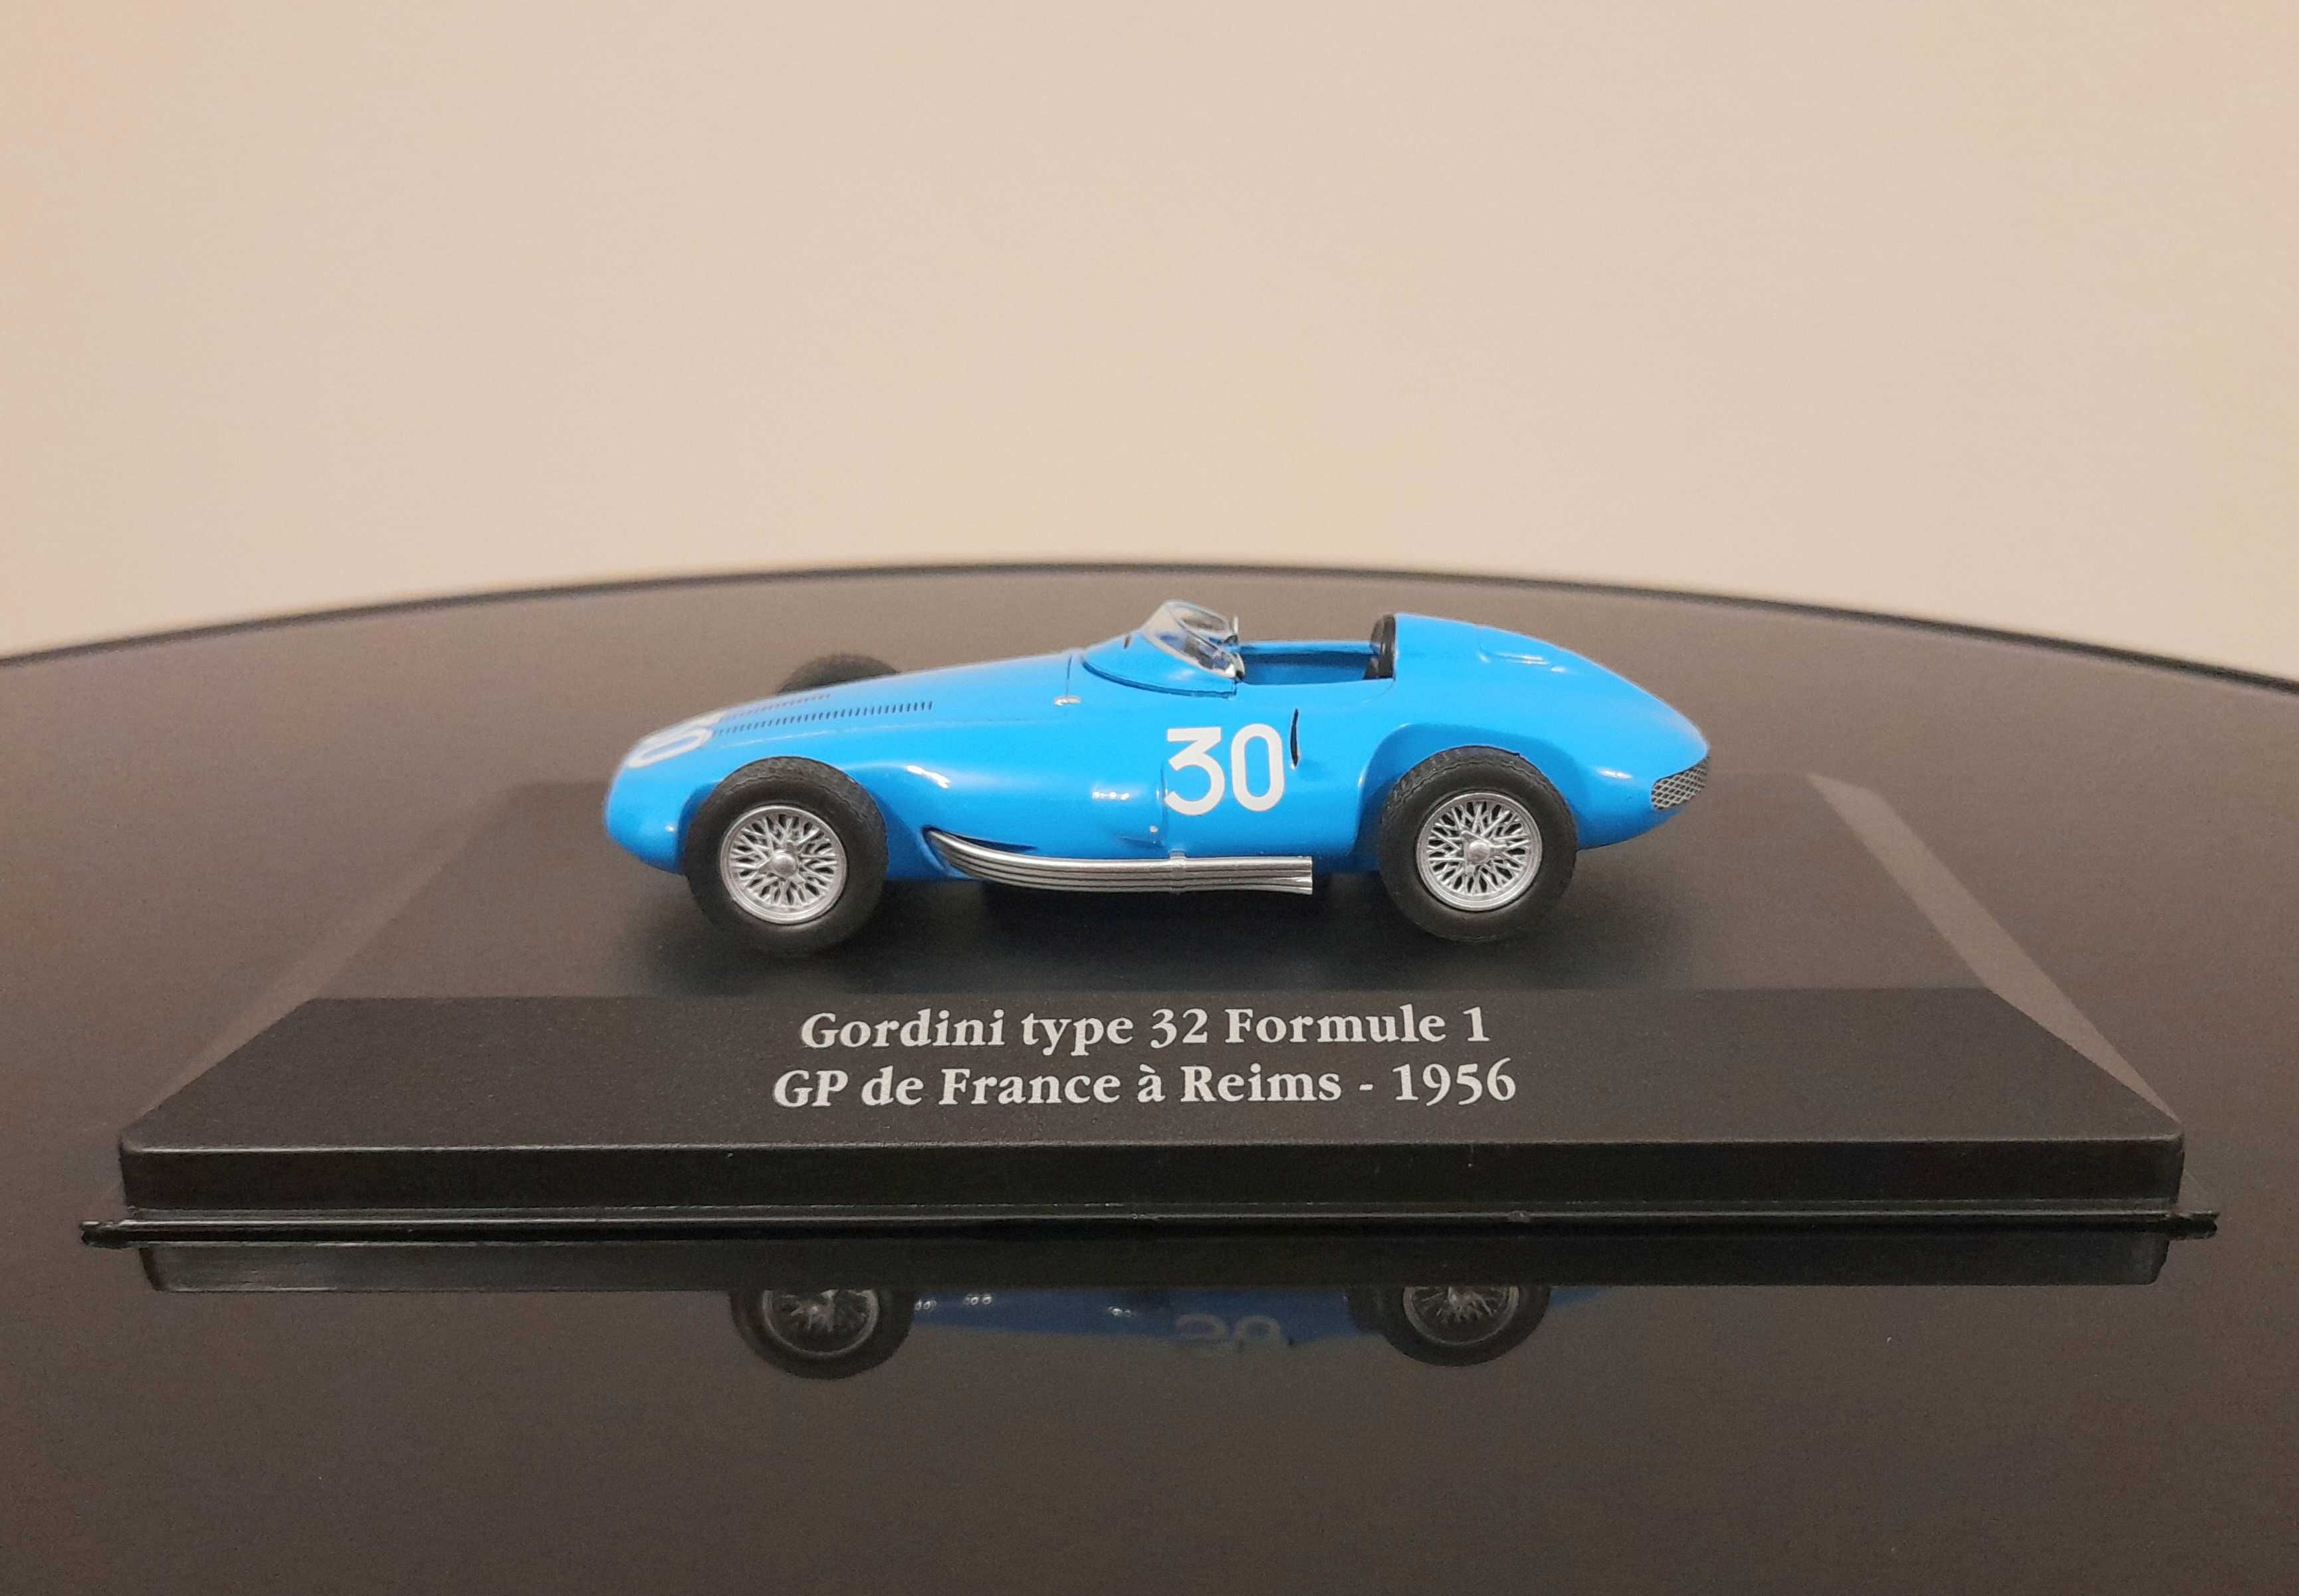 Gordini type 32 Formule 1 - GP de France a Reims 1956 1:43 IXO/ATLAS